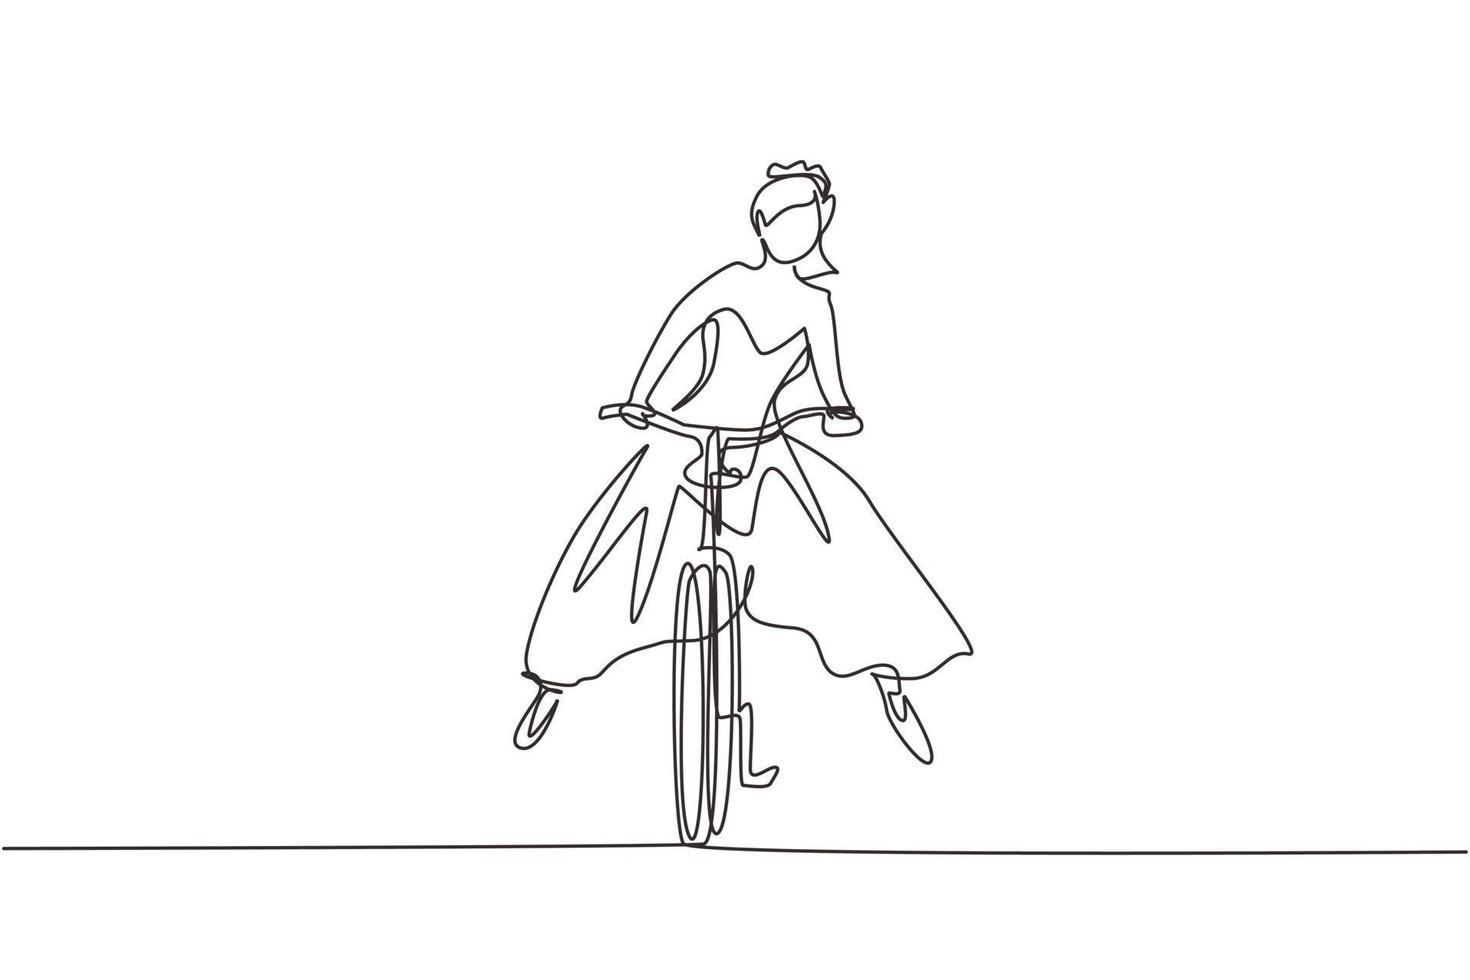 enkele ononderbroken lijntekening gelukkige jonge vrouw die trouwjurk draagt die naar het huwelijksfeest gaat op de fiets. ecologisch, gezond transportmiddel. een lijn tekenen grafisch ontwerp vector